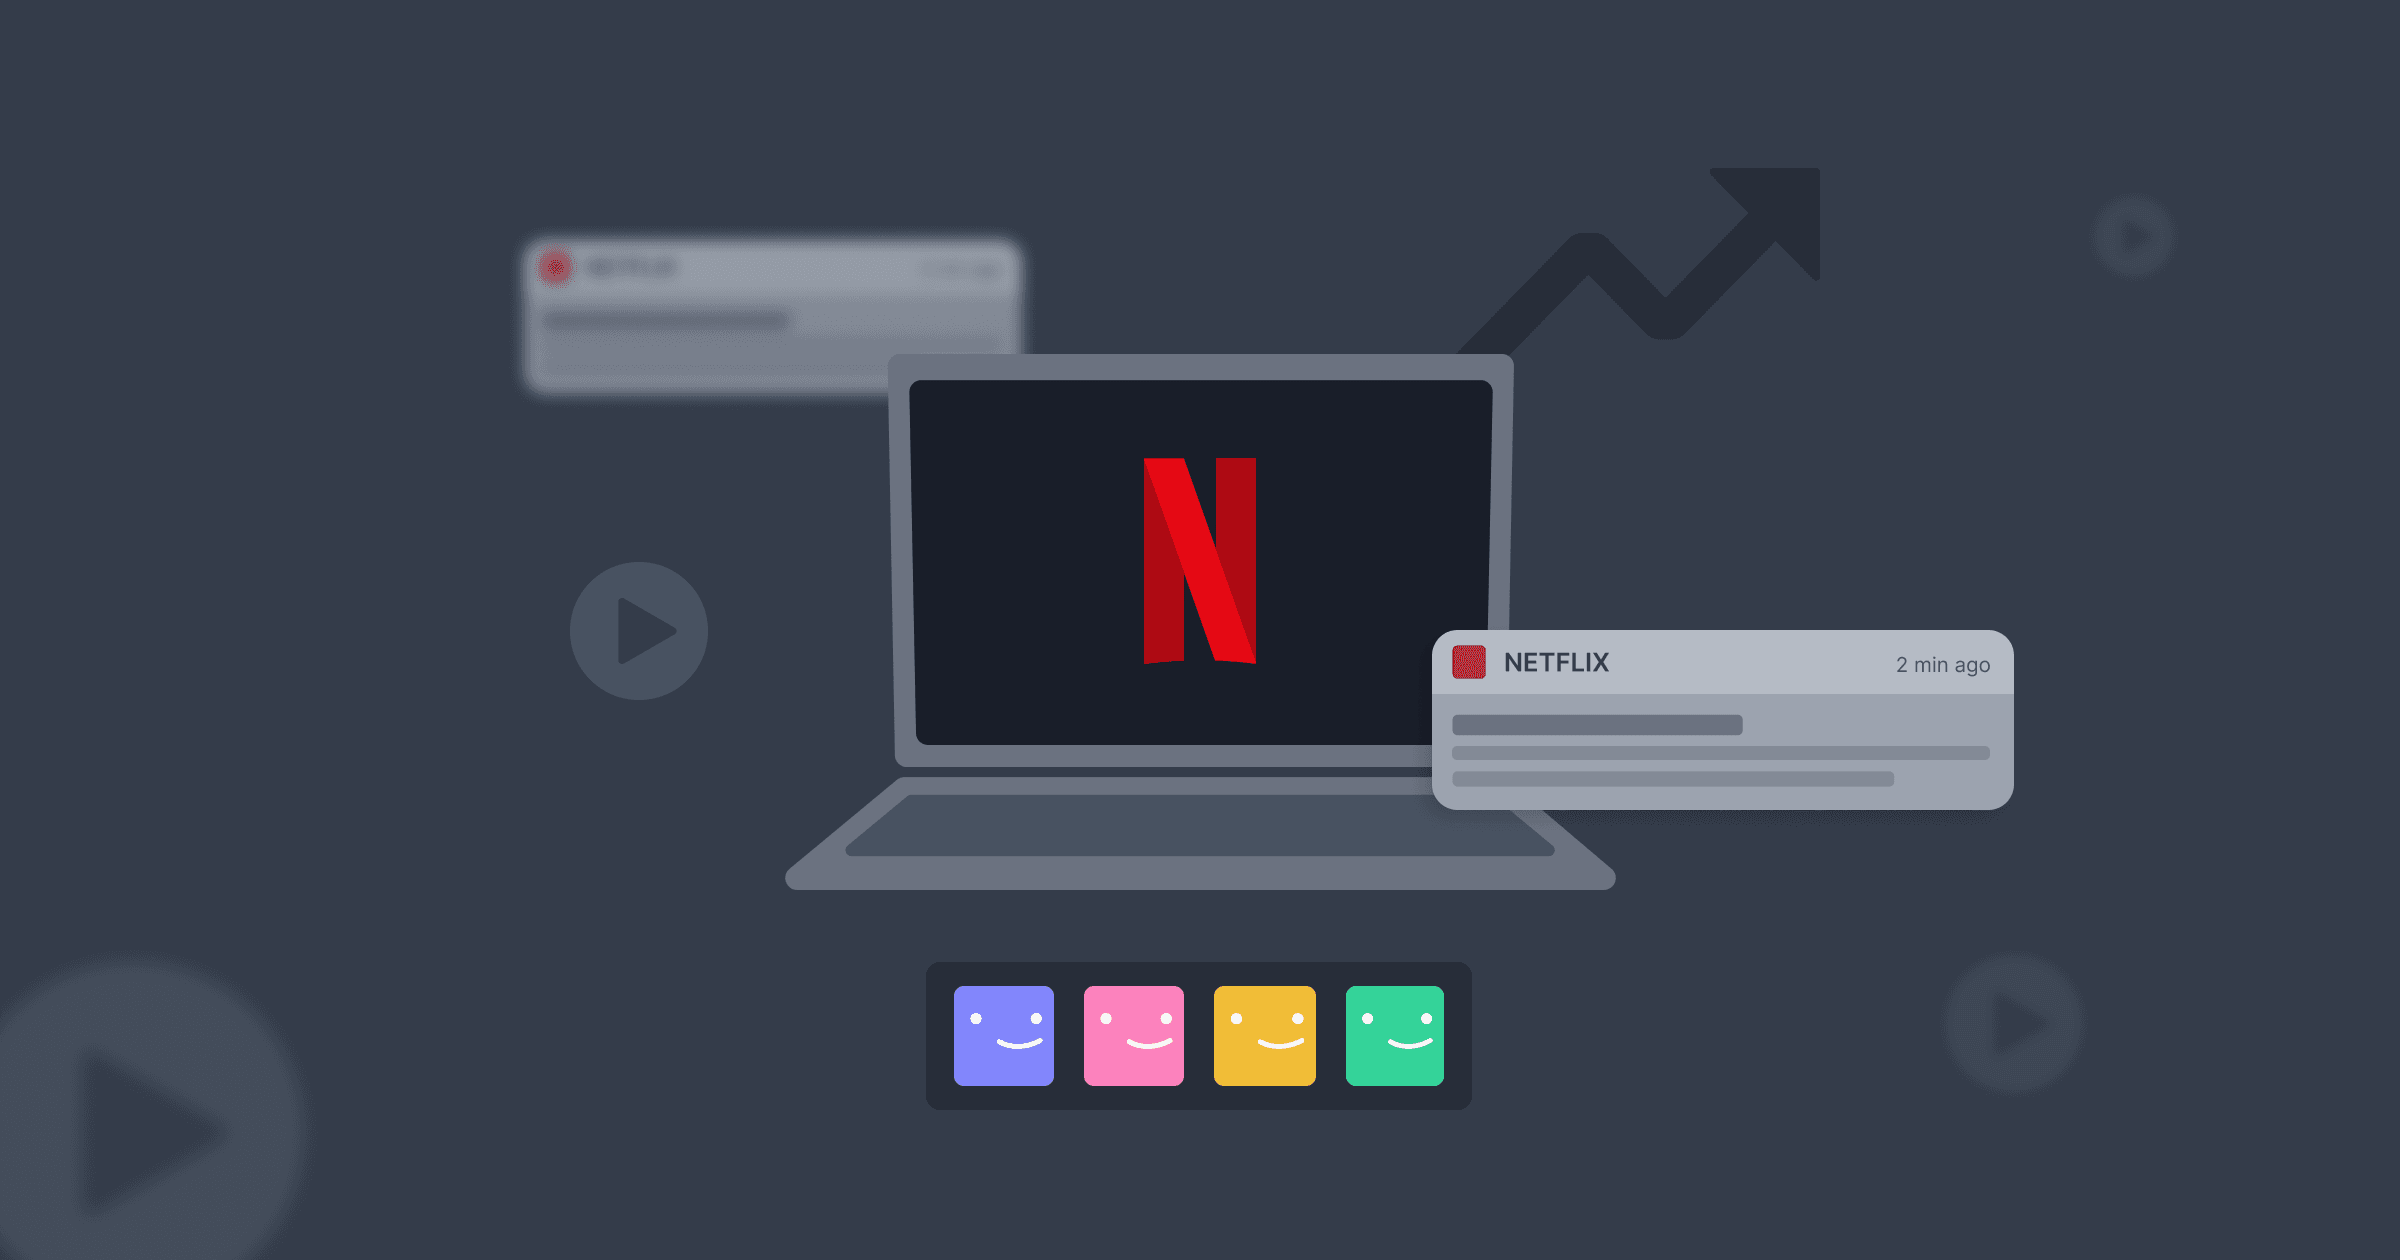 Um notebook com o logo da Netflix na tela, ao lado de uma seta indicando o aumento da taxa de conversão e uma notificação por push.